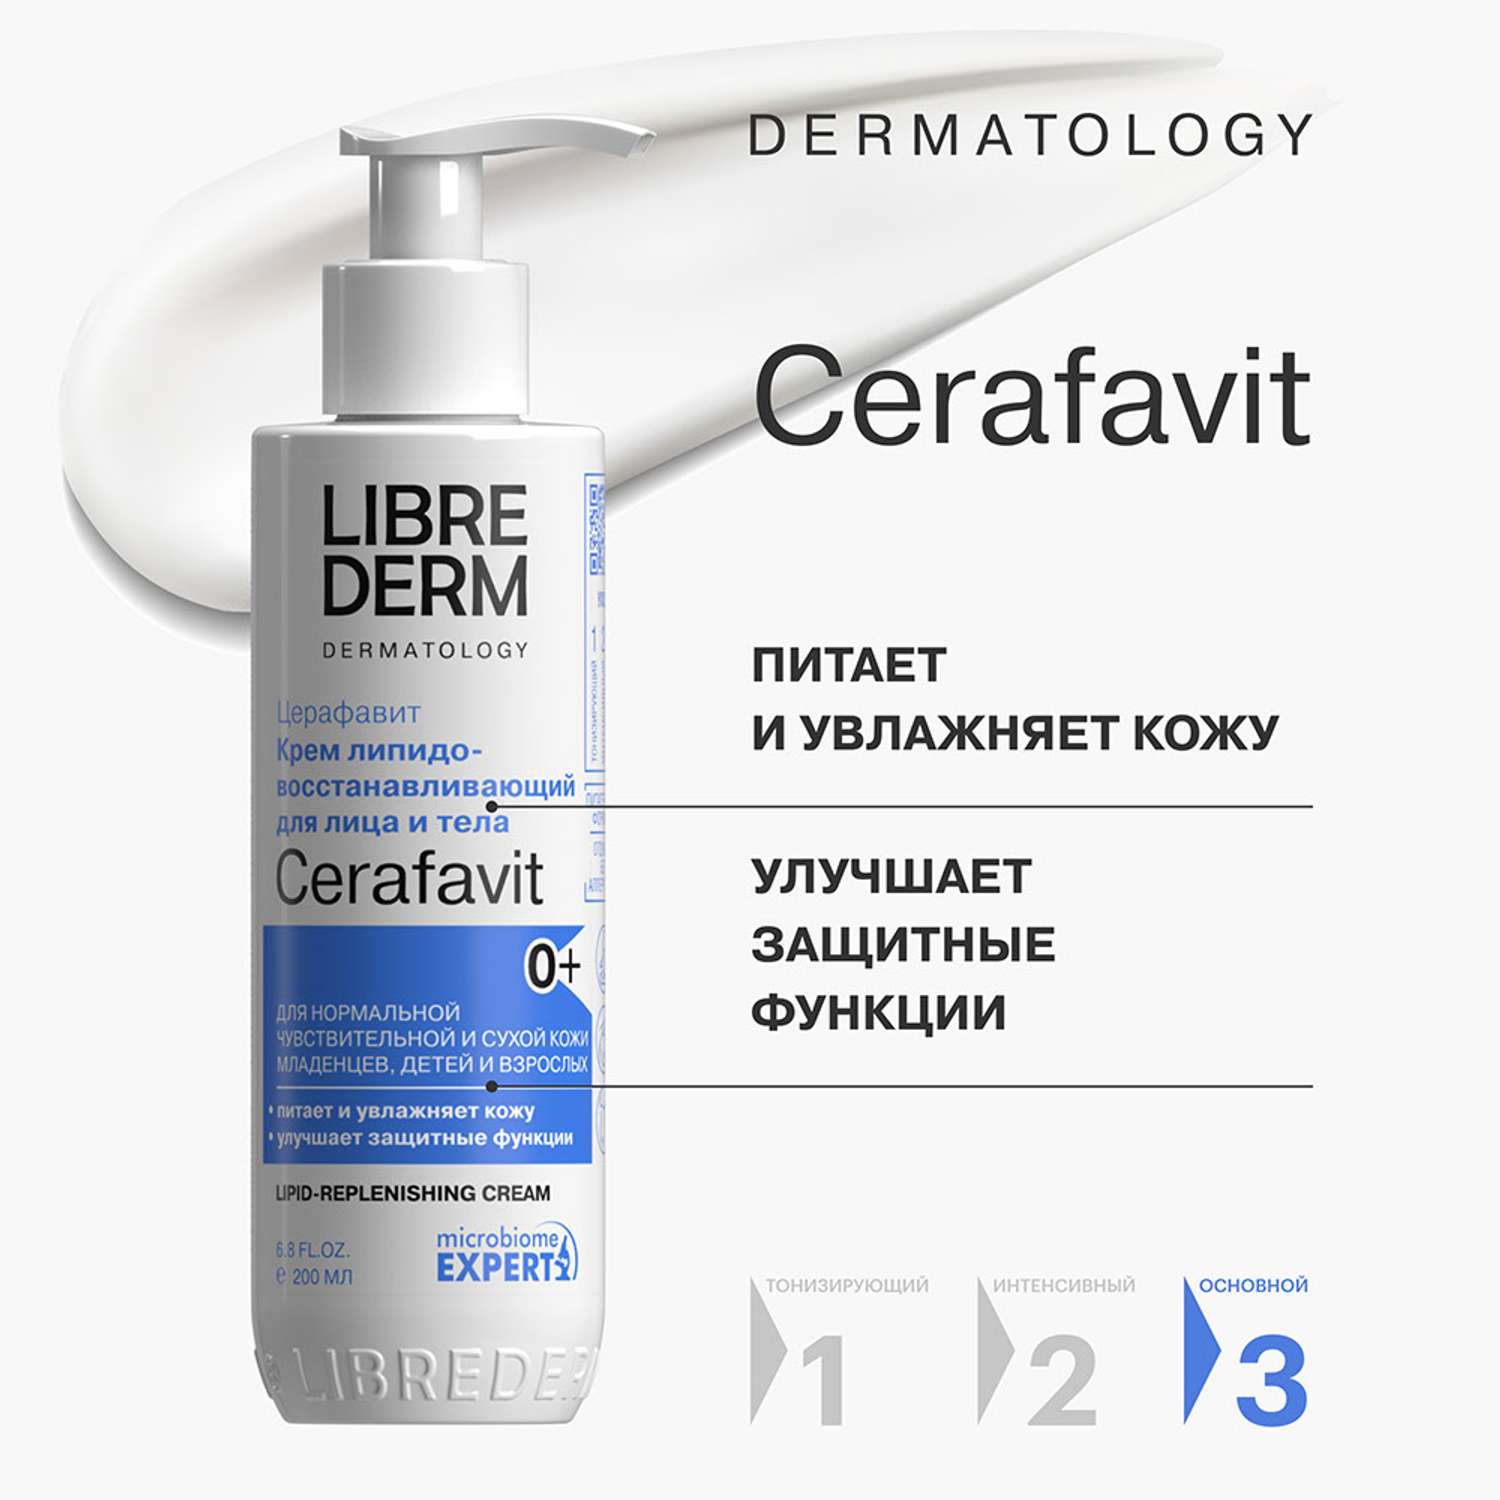 Крем 200 мл Librederm CERAFAVIT крем липидовосстанавливающий с церамидами и пребиотиком для лица и тела 0+ - фото 2